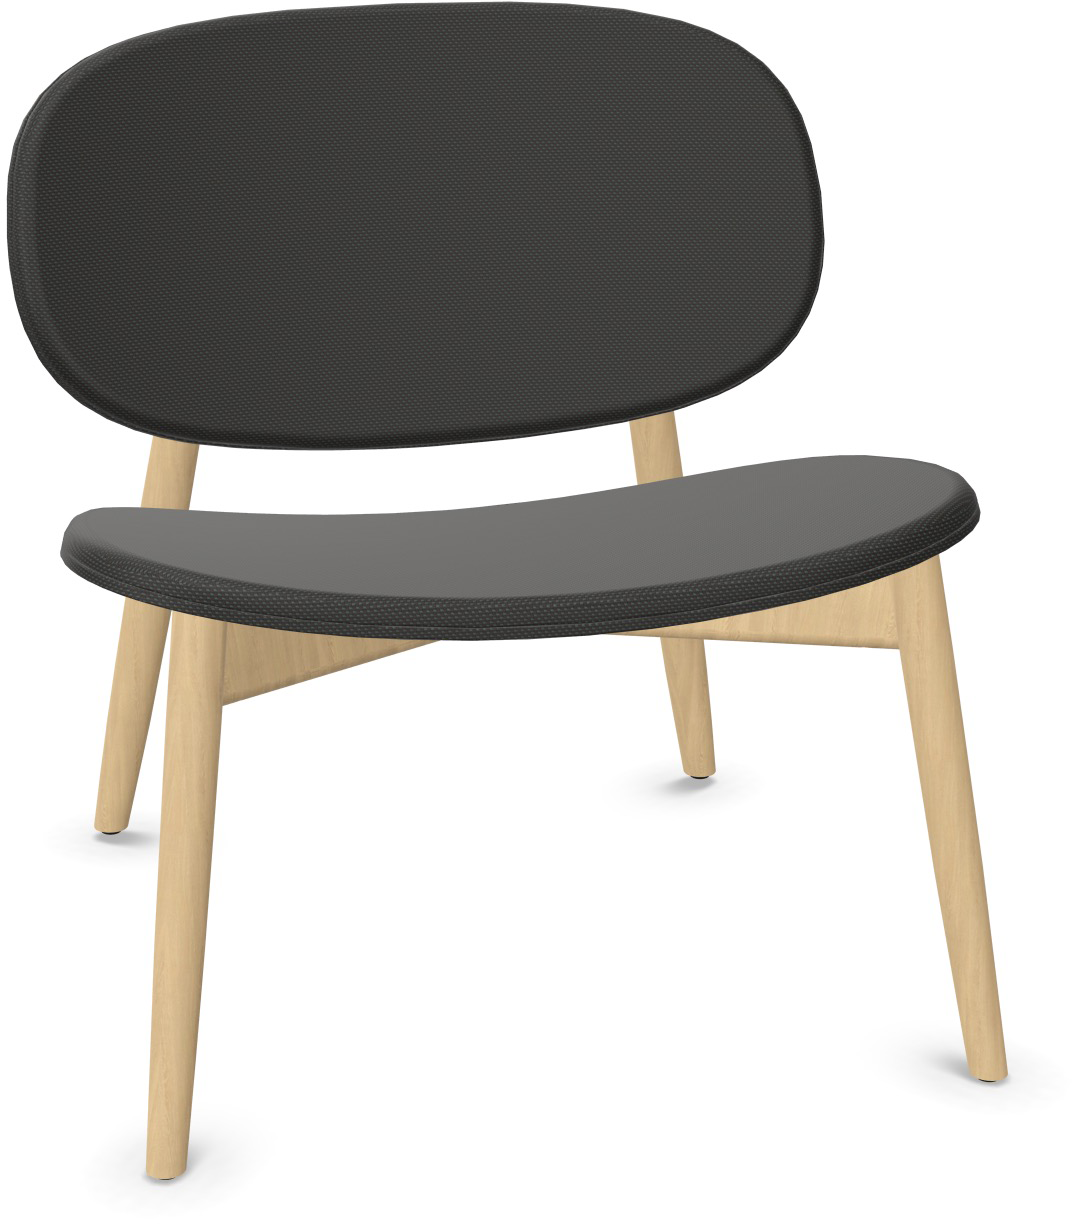 HARMO Relaxsessel in Dunkelgrau präsentiert im Onlineshop von KAQTU Design AG. Sessel ist von Infiniti Design